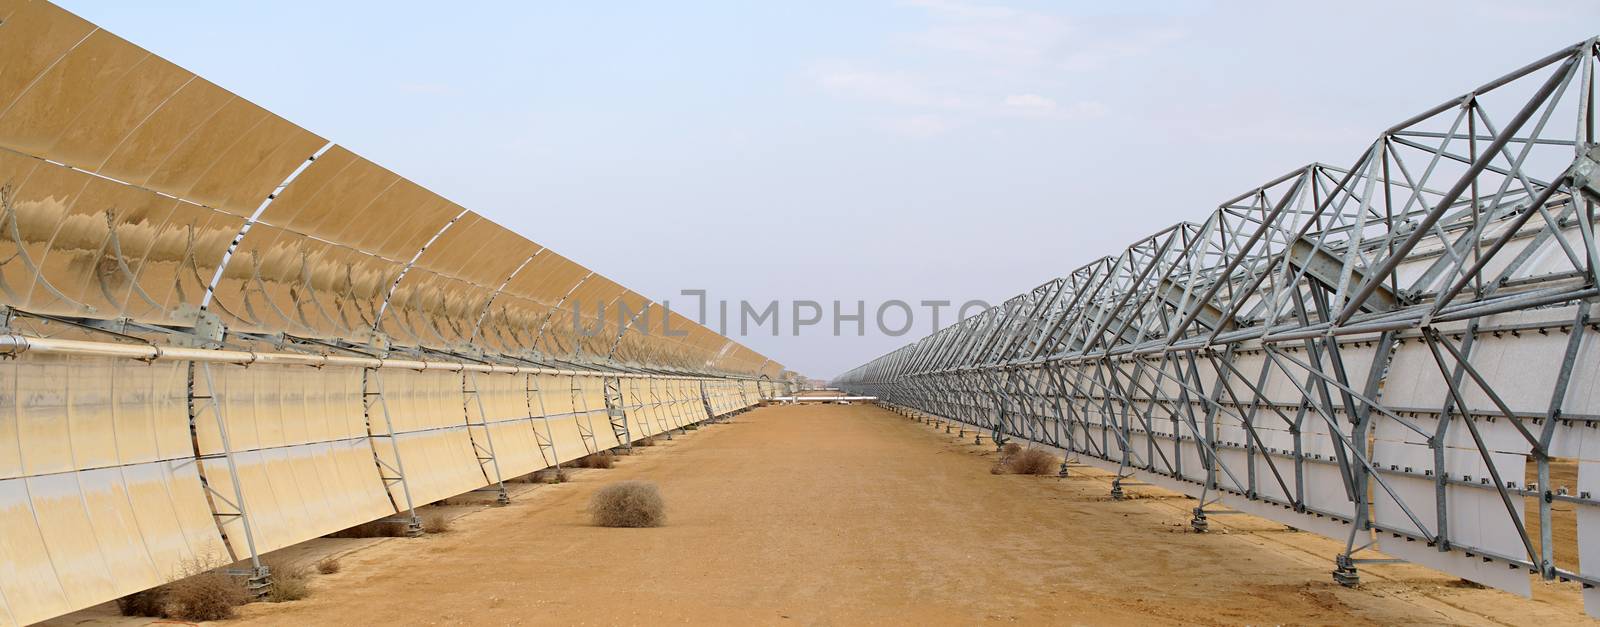 solar batteries in the desert by MegaArt